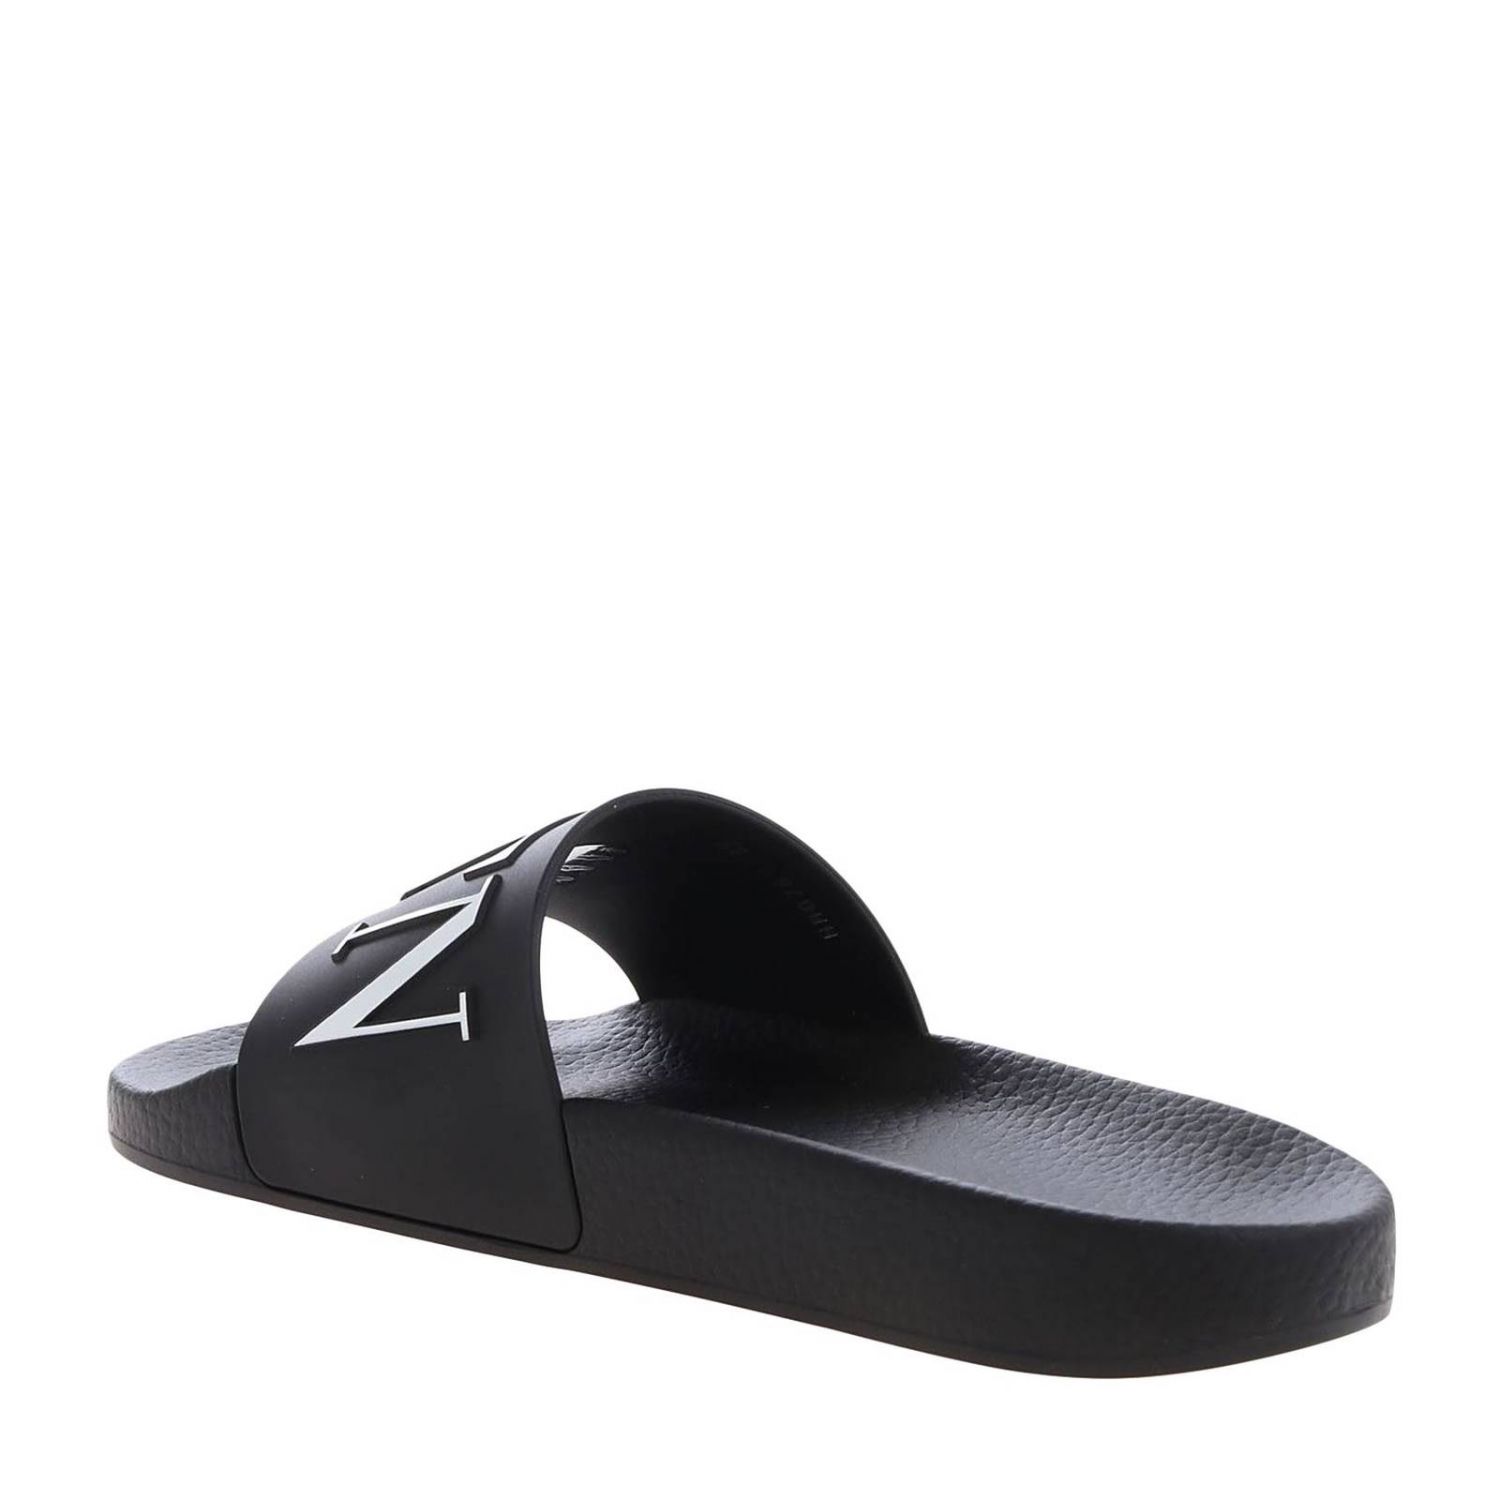 VALENTINO GARAVANI: Flat sandals woman - Black | Flat Sandals Valentino ...